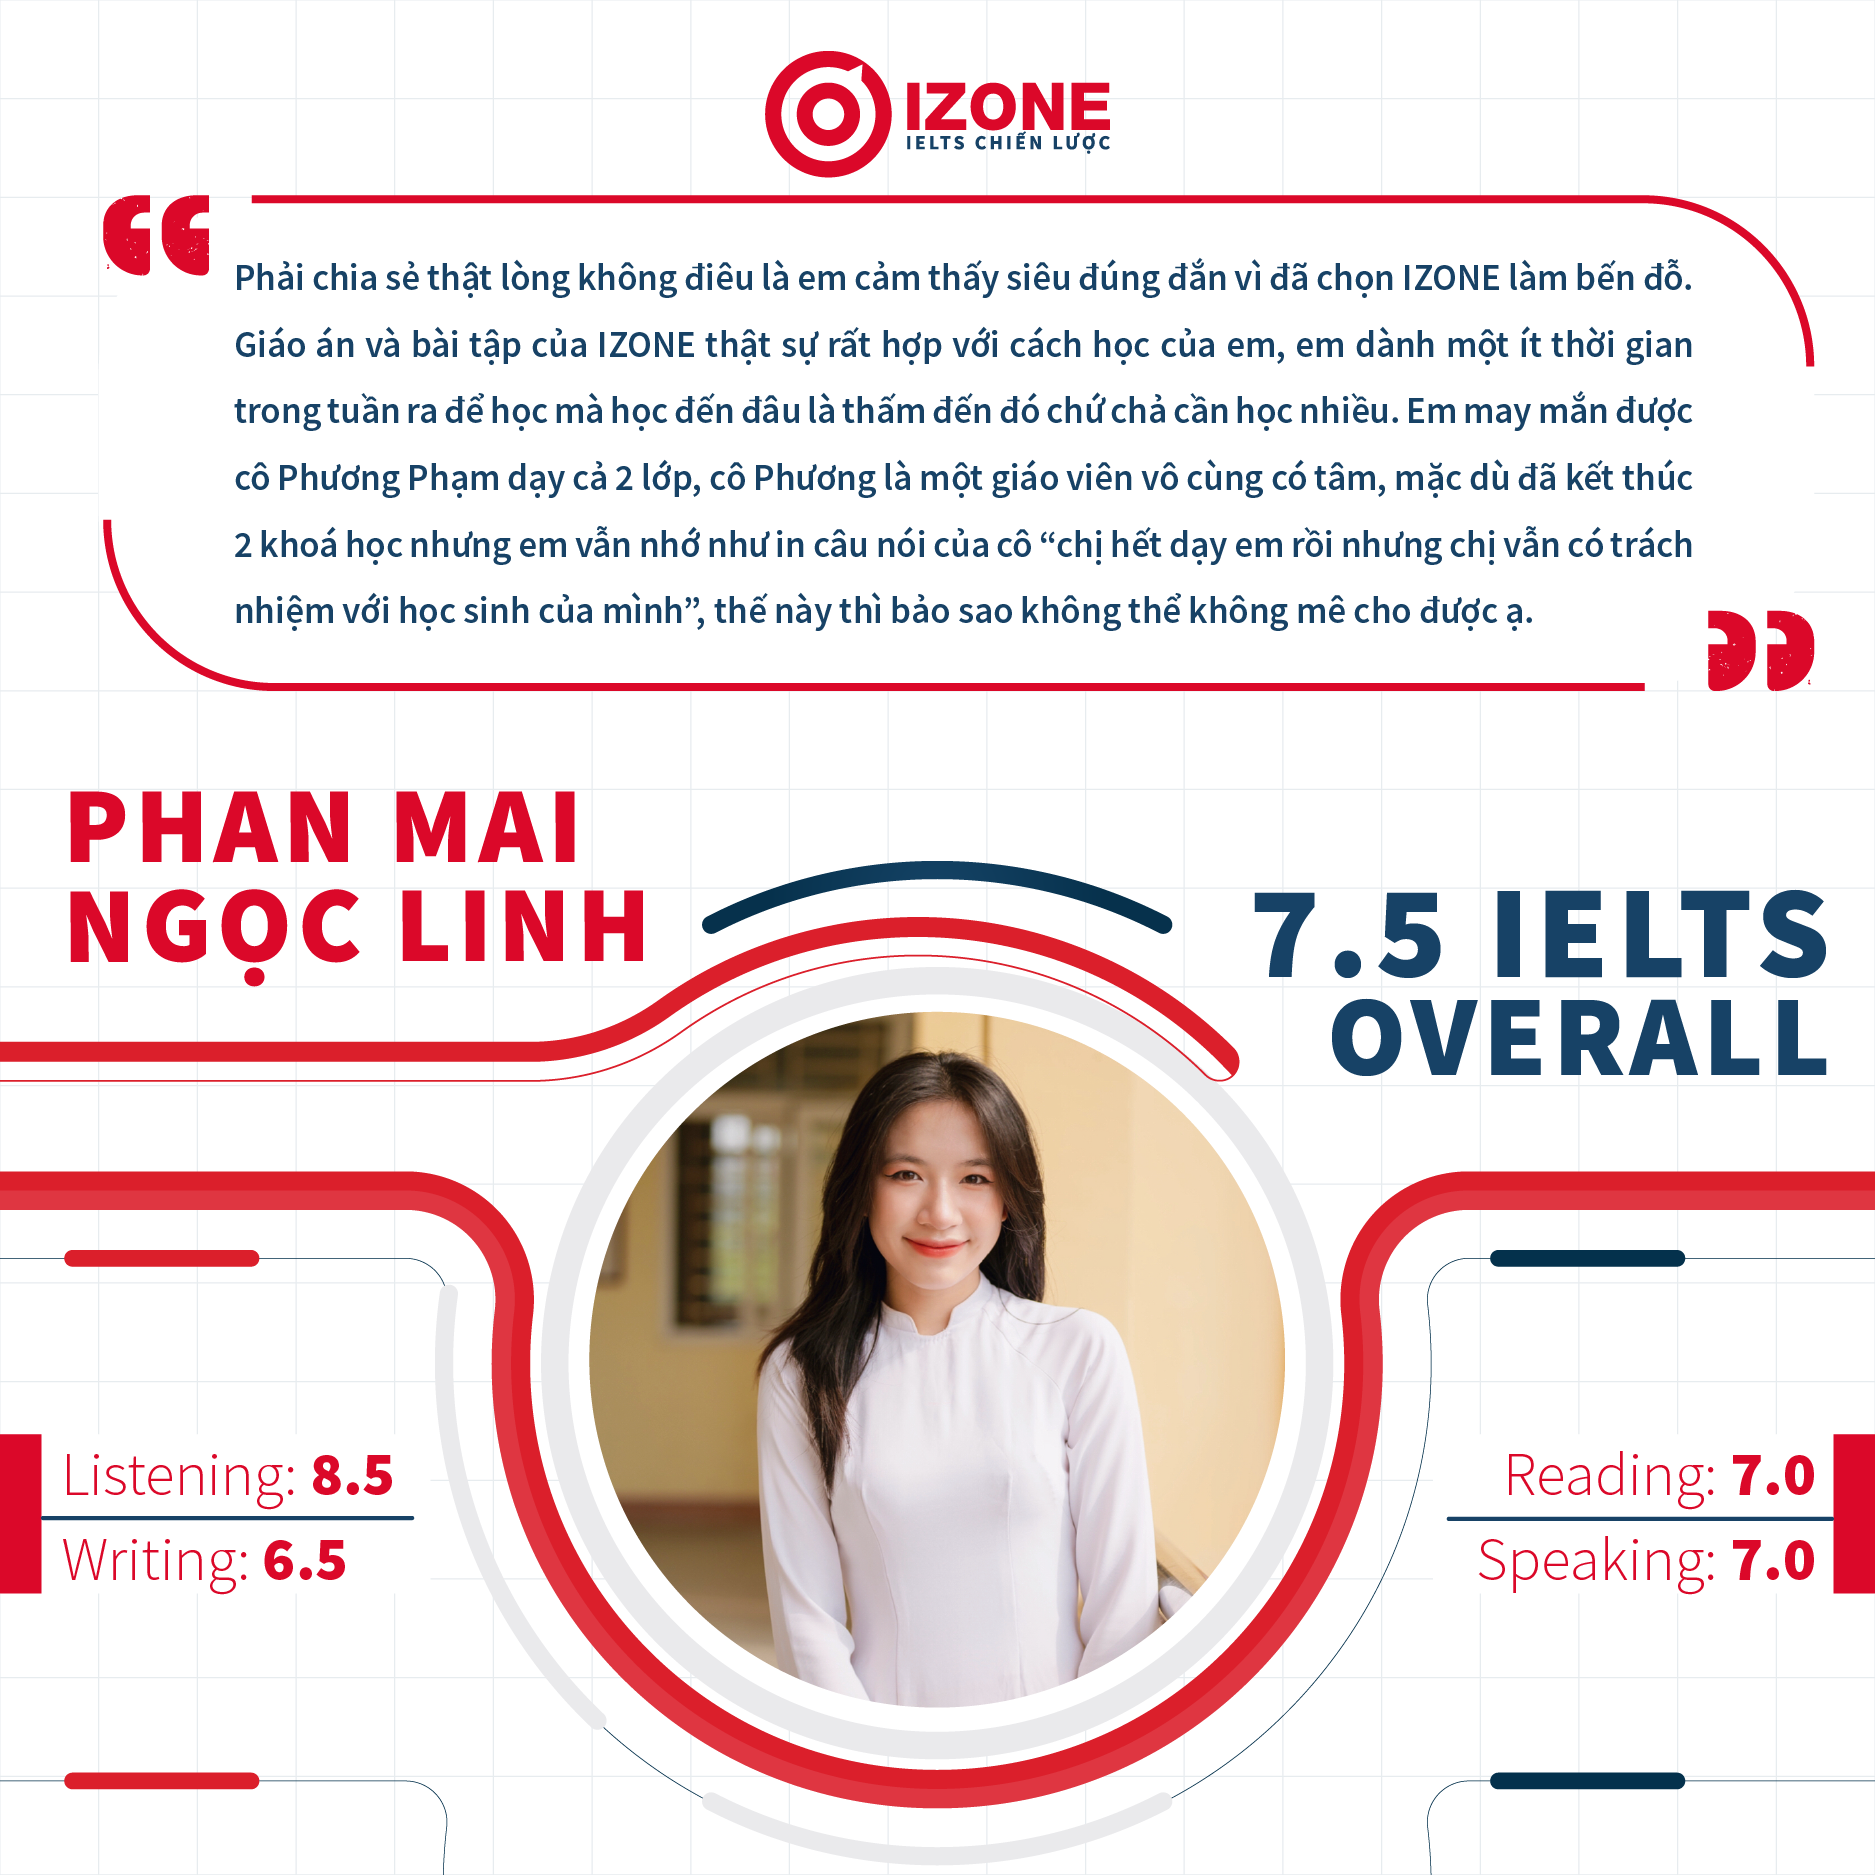 Học viên Phan Mai Ngọc Linh – 7.5 IELTS